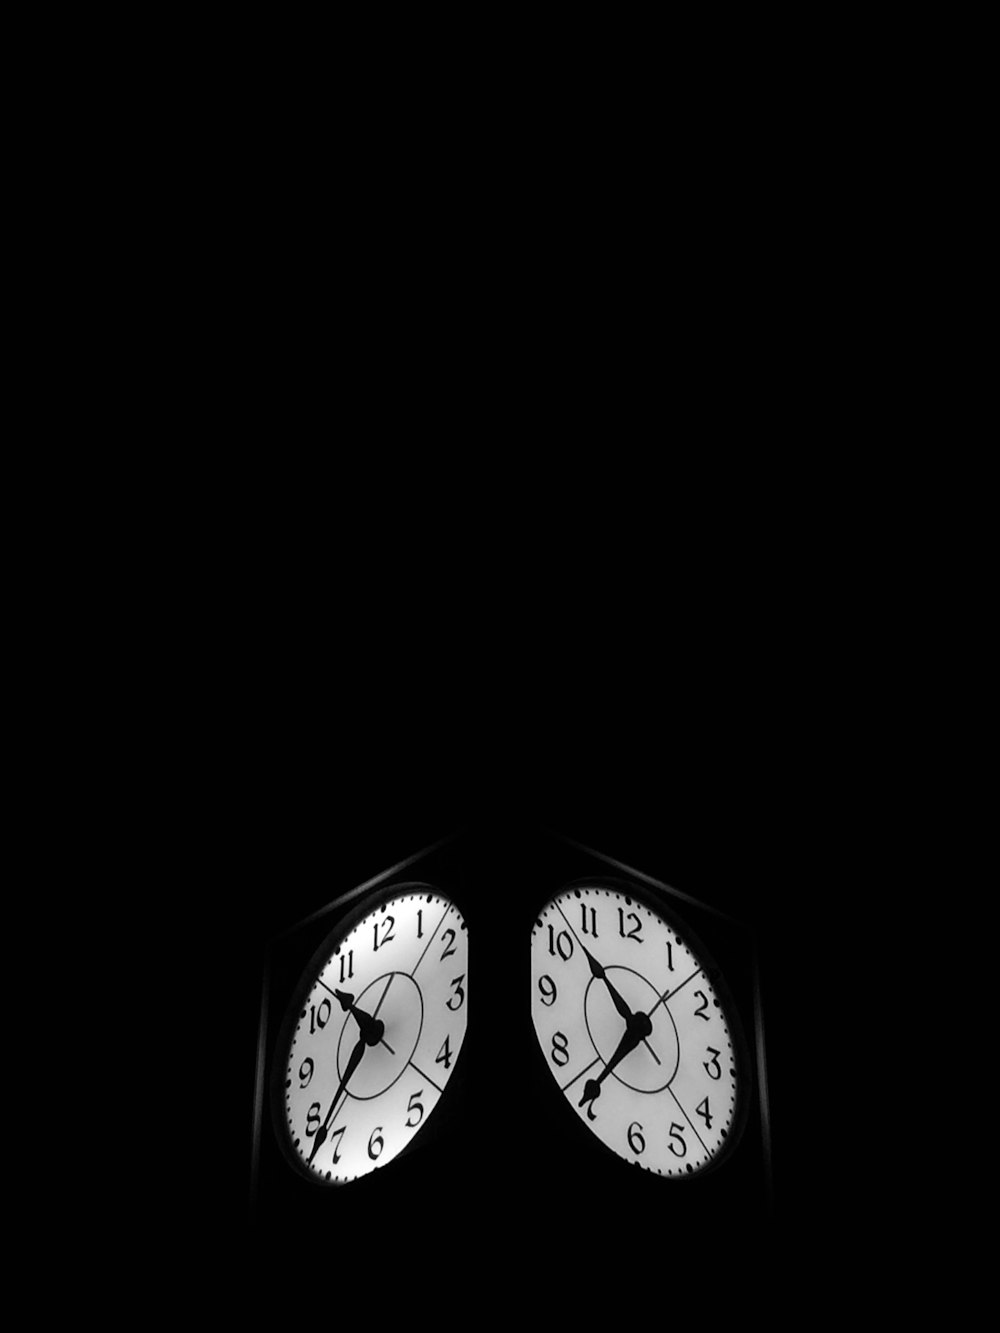 Reloj negro que muestra 7:52